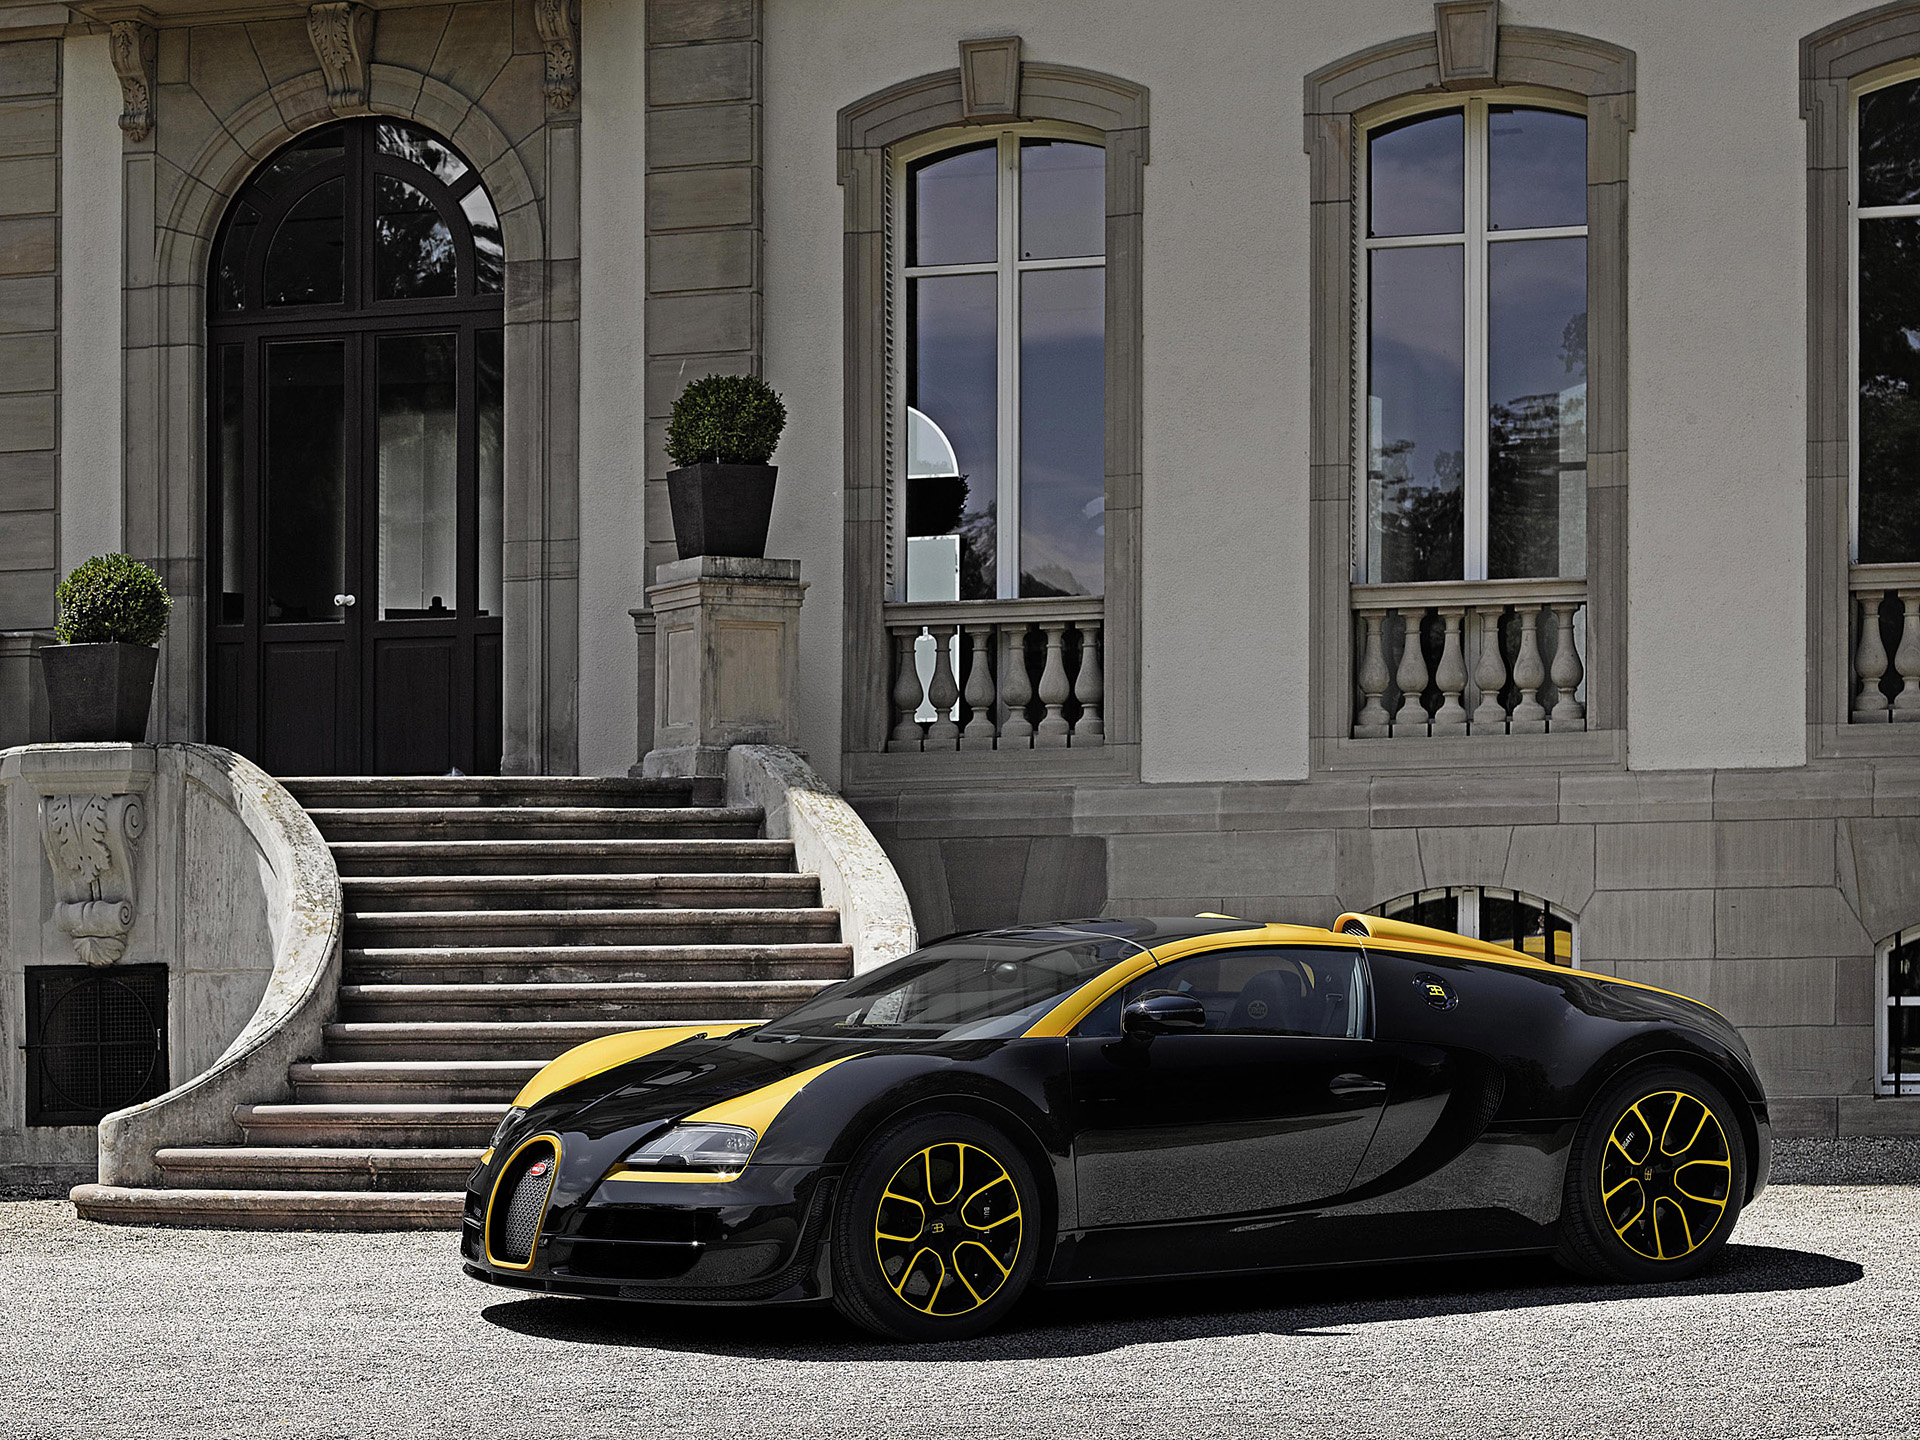  2014 Bugatti Veyron Grand Sport Vitesse 1 of 1 Wallpaper.